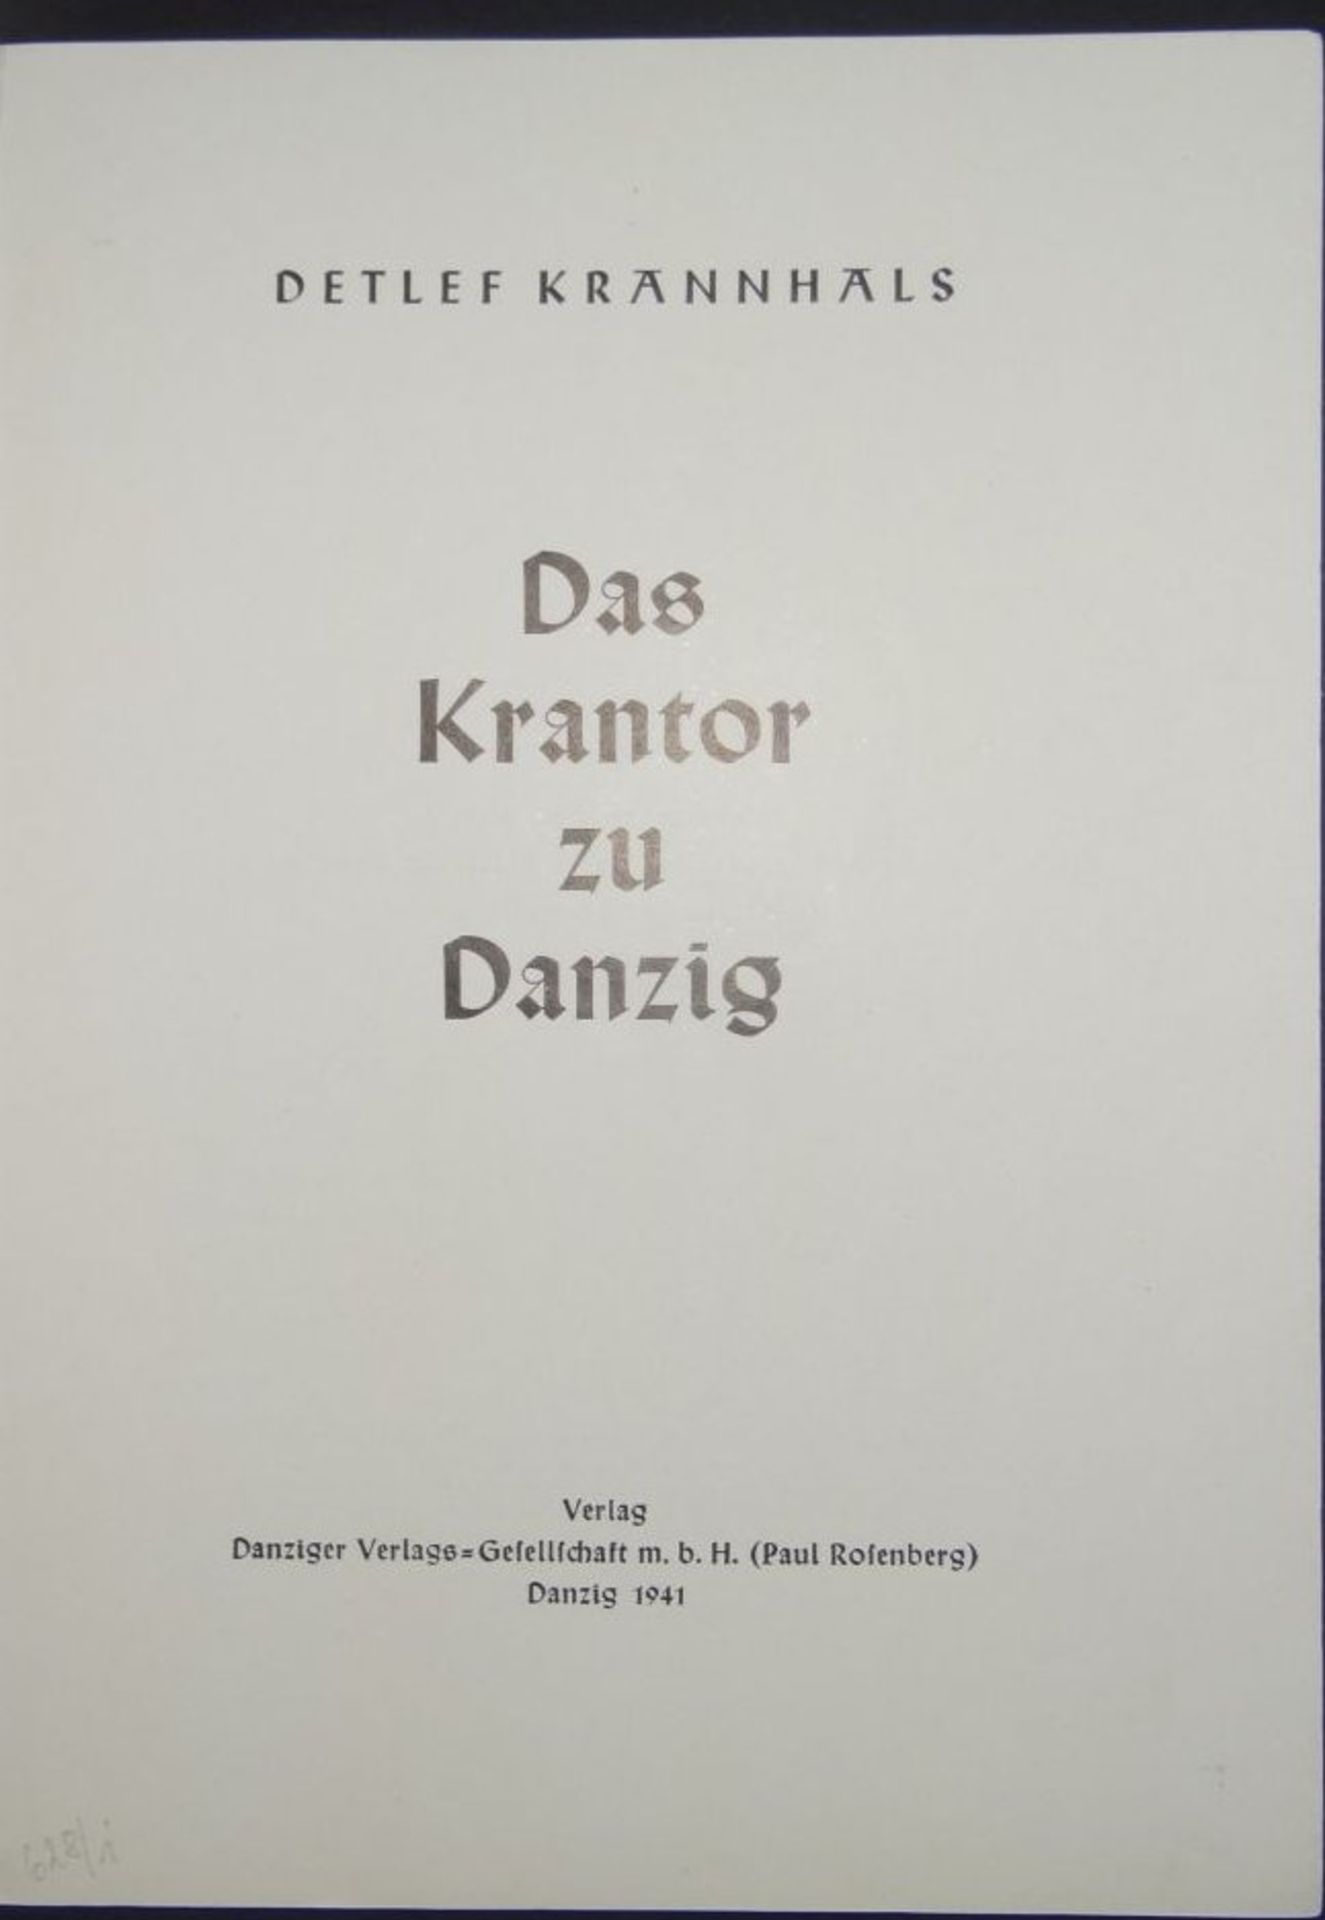 "Das Krantor zu Danzig" Bildband 1941- - -22.61 % buyer's premium on the hammer priceVAT margin - Bild 2 aus 8